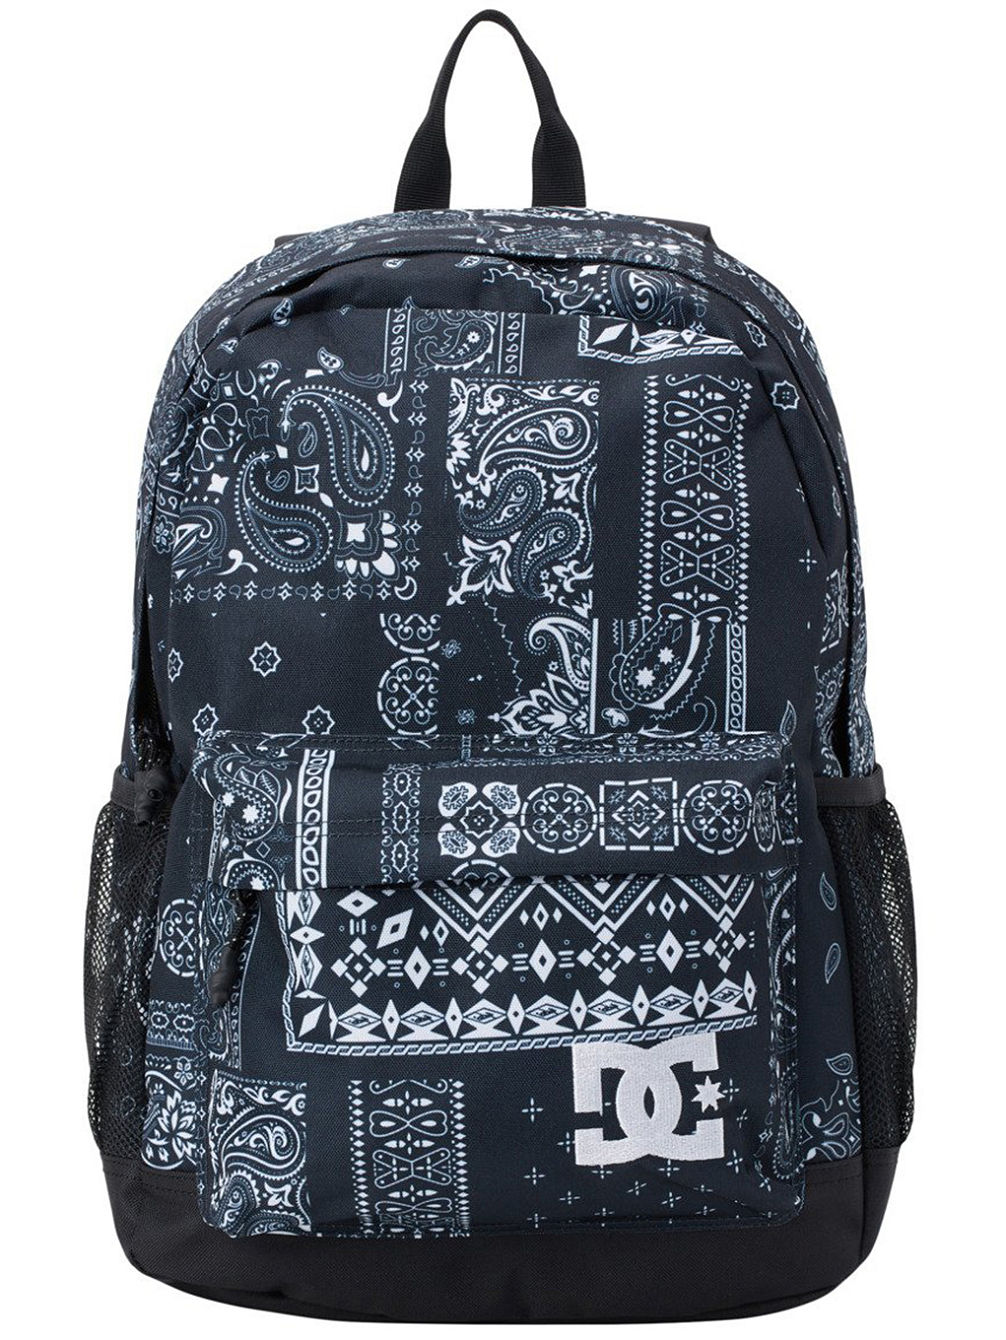 Backsider Seasonal 3 Backpack